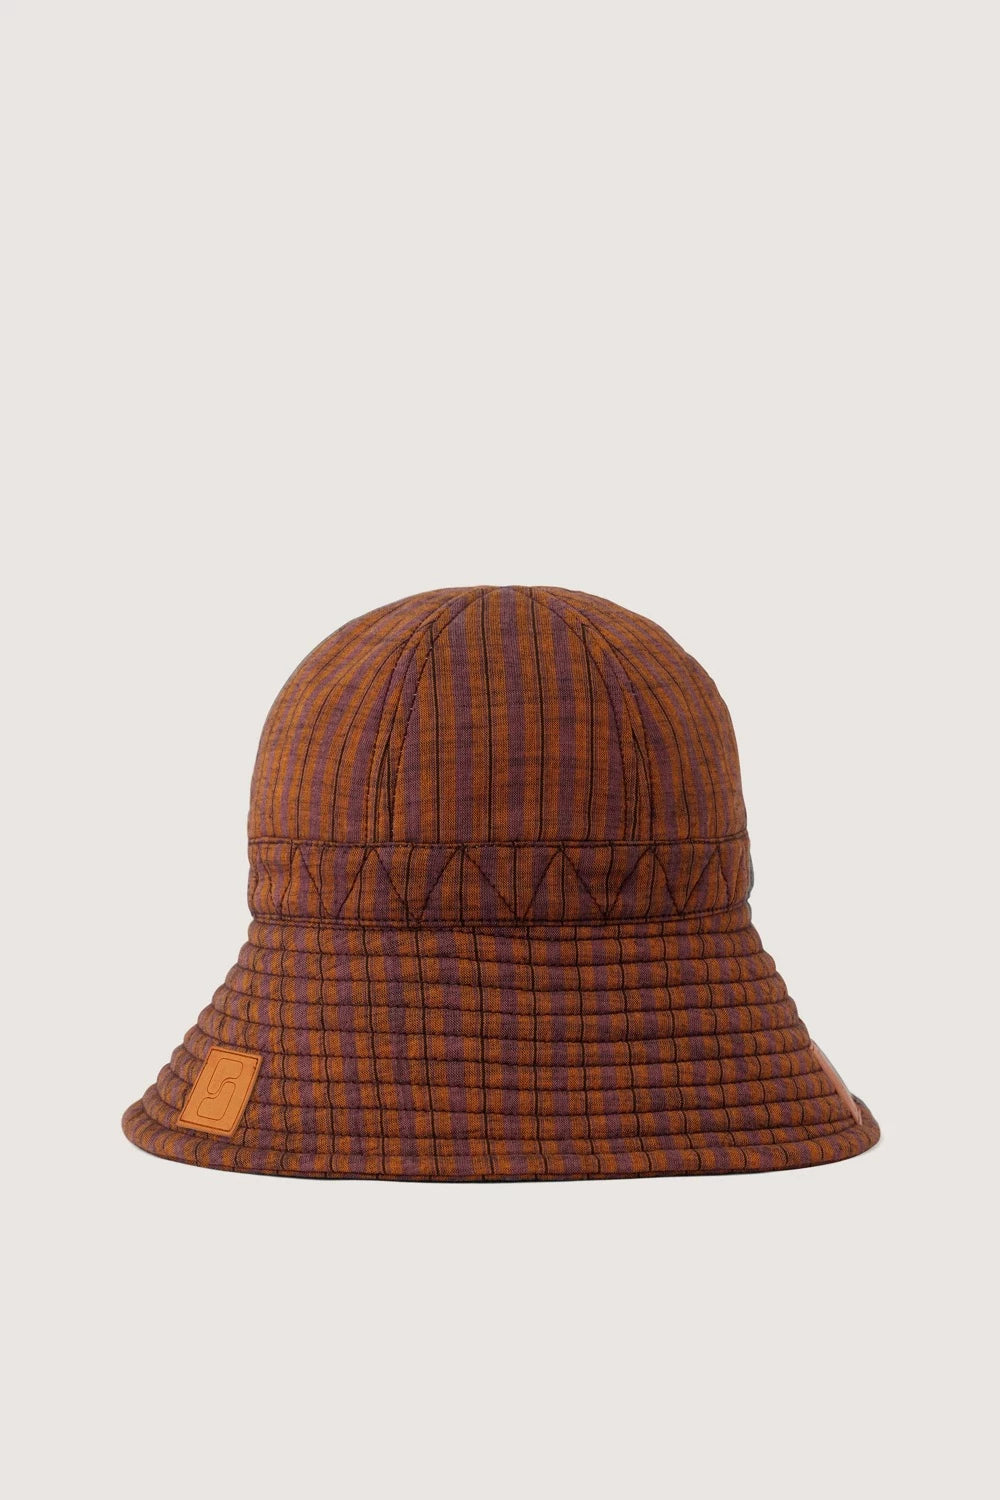 Soeur - Tornade Hat: Violet/Orange